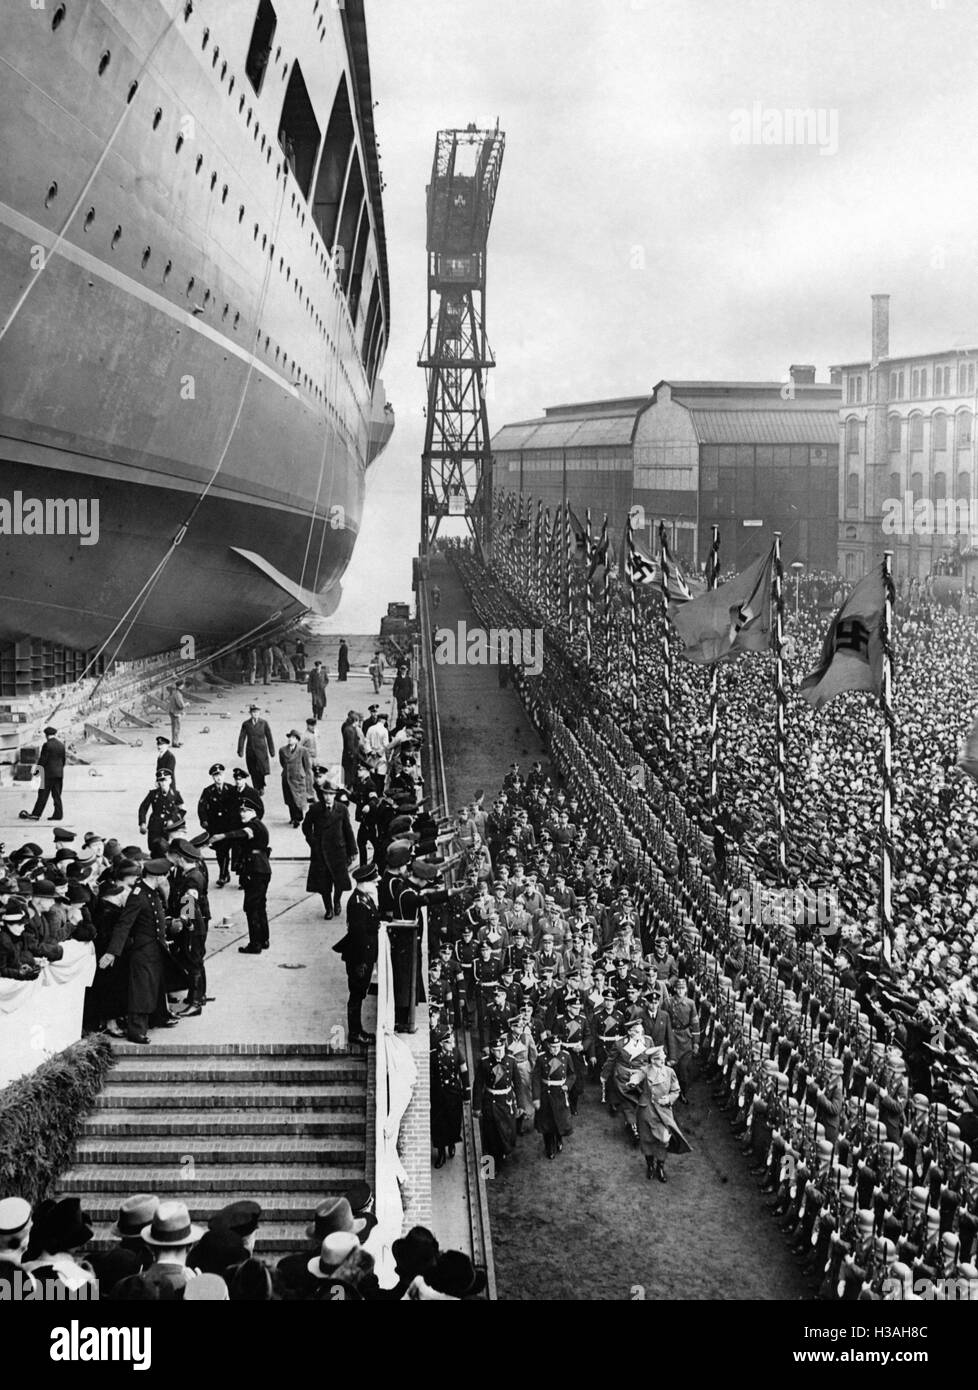 "Launching of the ""Graf Zeppelin"" in Kiel, 1938" Stock Photo